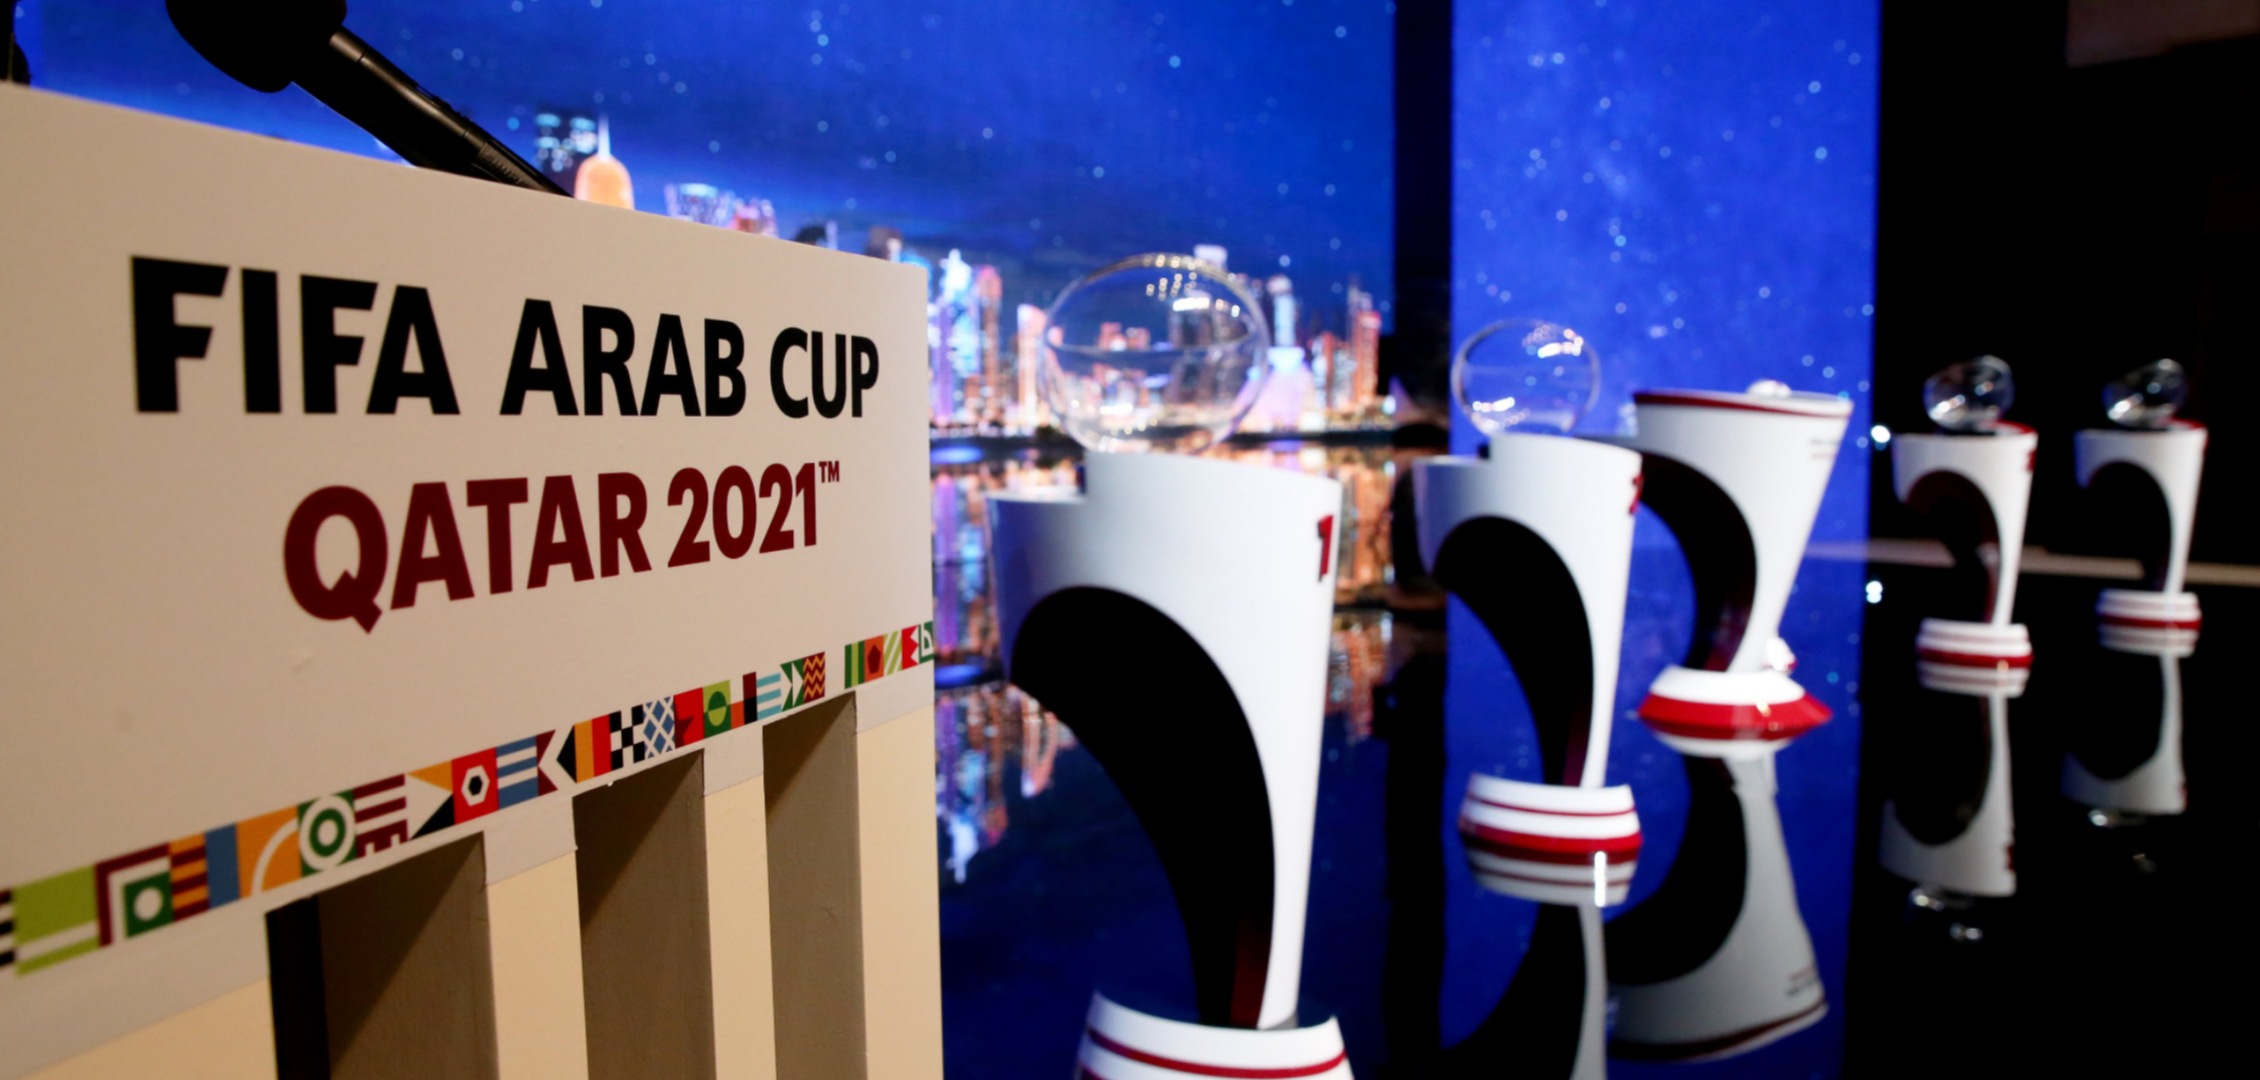 الكشف عن مجموعات بطولة كأس العرب قطر 2021